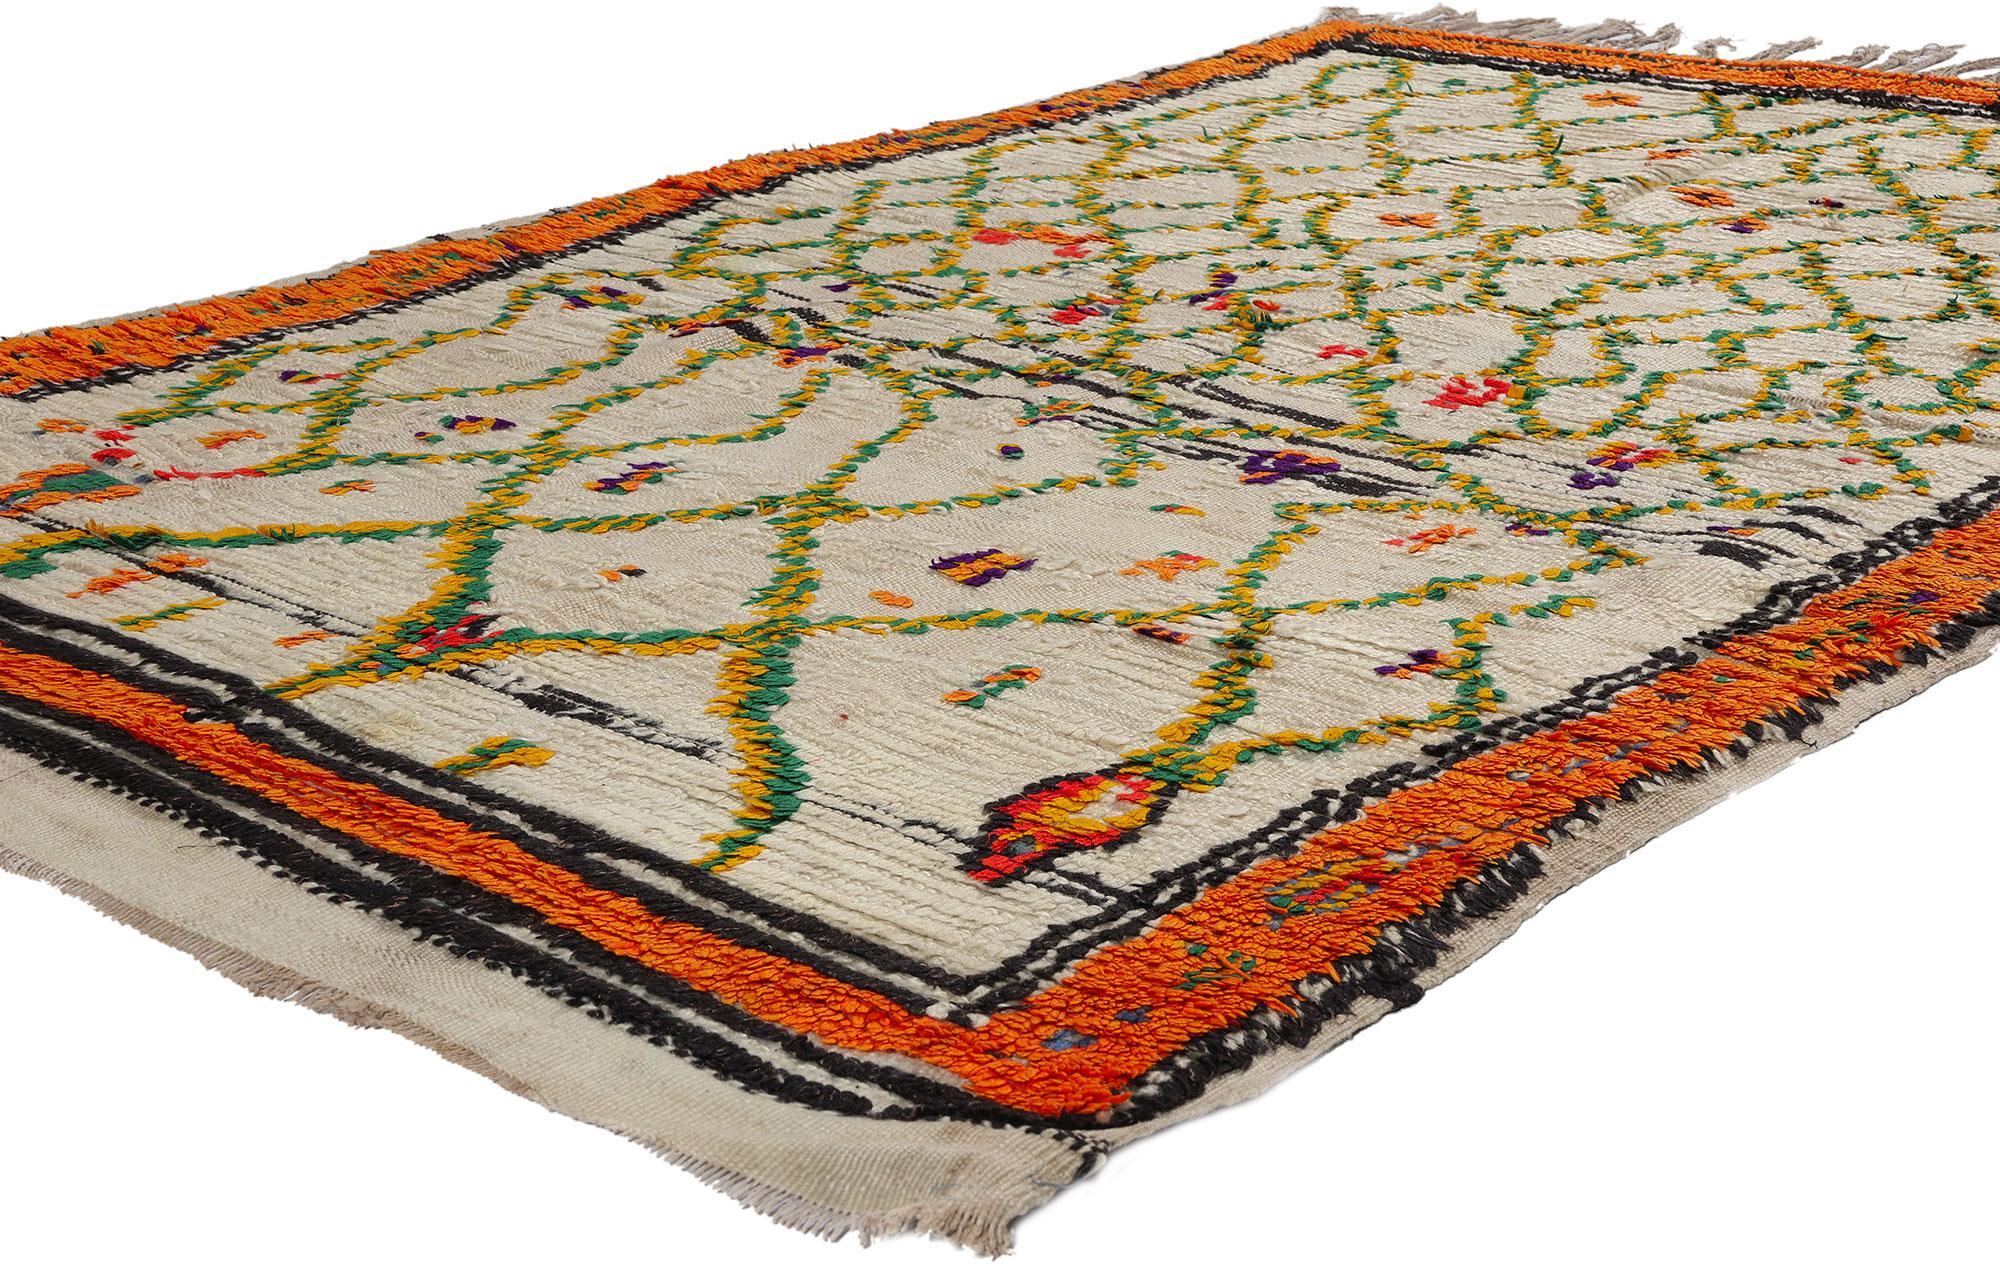 21736 Tapis vintage coloré marocain en azilal, 04'02 x 06'06. Entrez dans le monde vivant des tapis Azilal, où chaque fil raconte une histoire. Ils sont fabriqués par des artisans qualifiés au milieu des paysages dynamiques du Maroc central et des